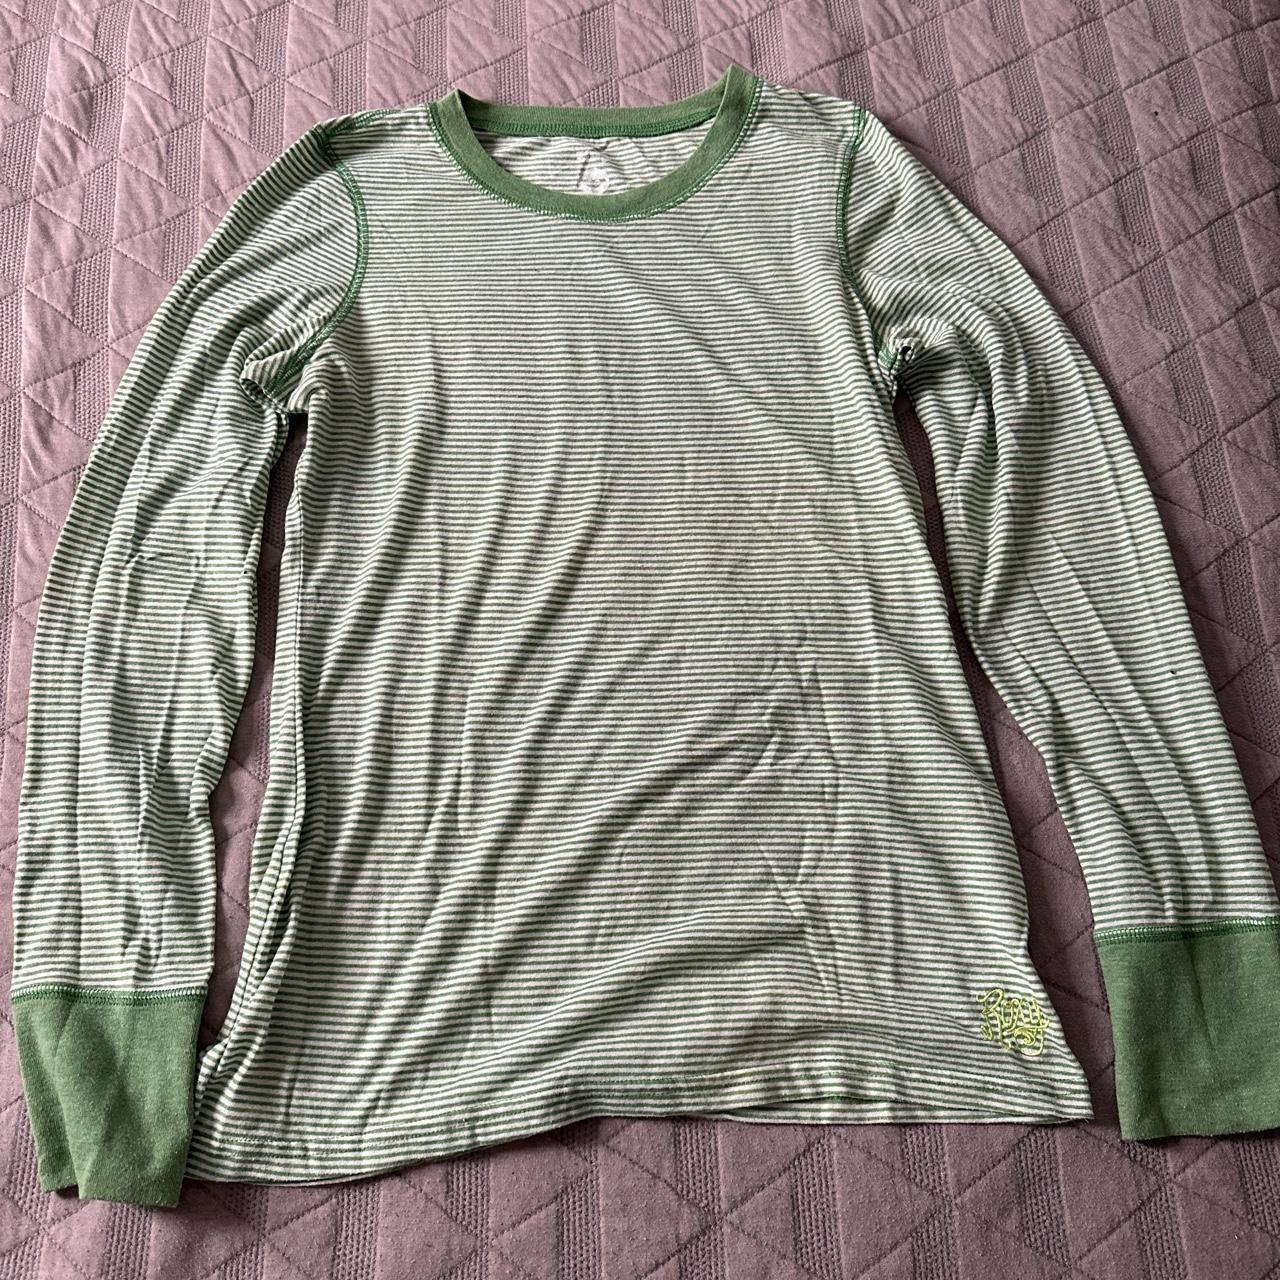 Roxy Women's Green Shirt | Depop